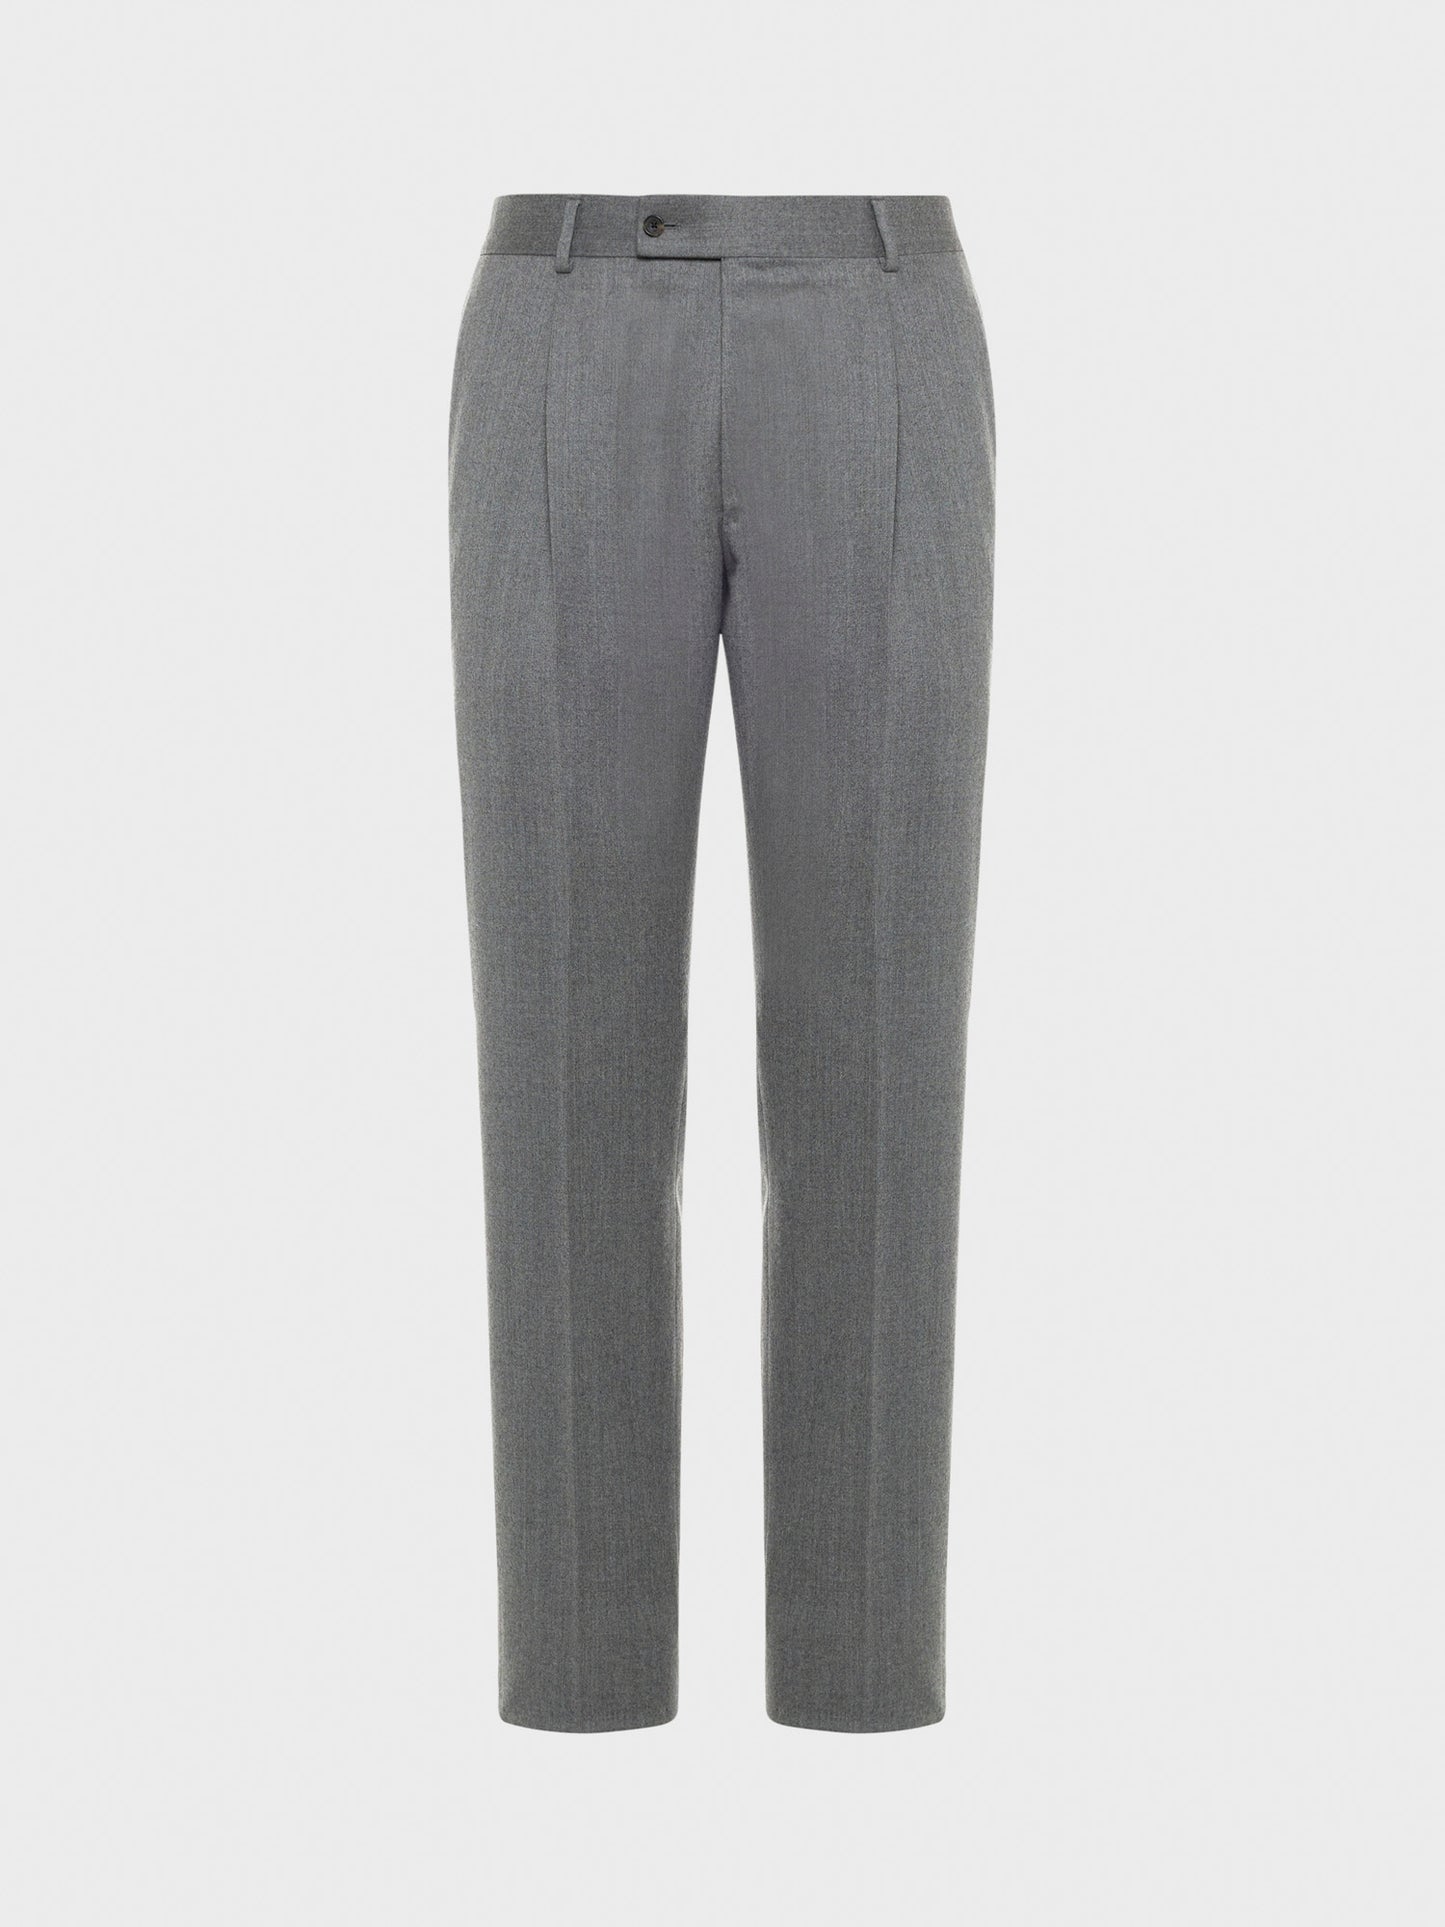 Caruso Menswear Abbigliamento Uomo Pantalone in lana "Nuage" e seta grigio still